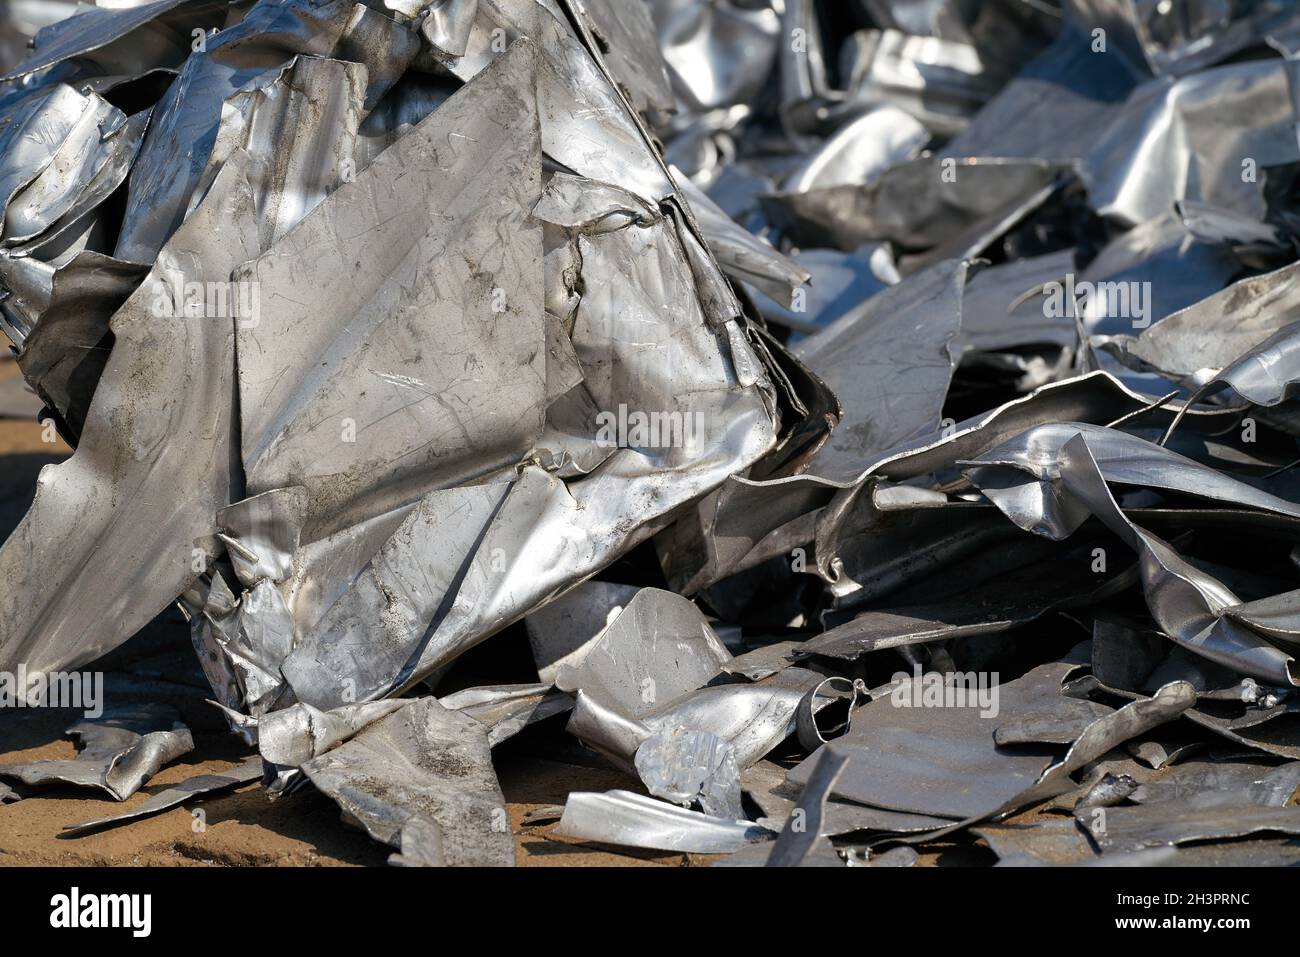 Mettre du métal au rebut dans une cour de ferraille du port d'entrée Magdebourg en Allemagne Banque D'Images